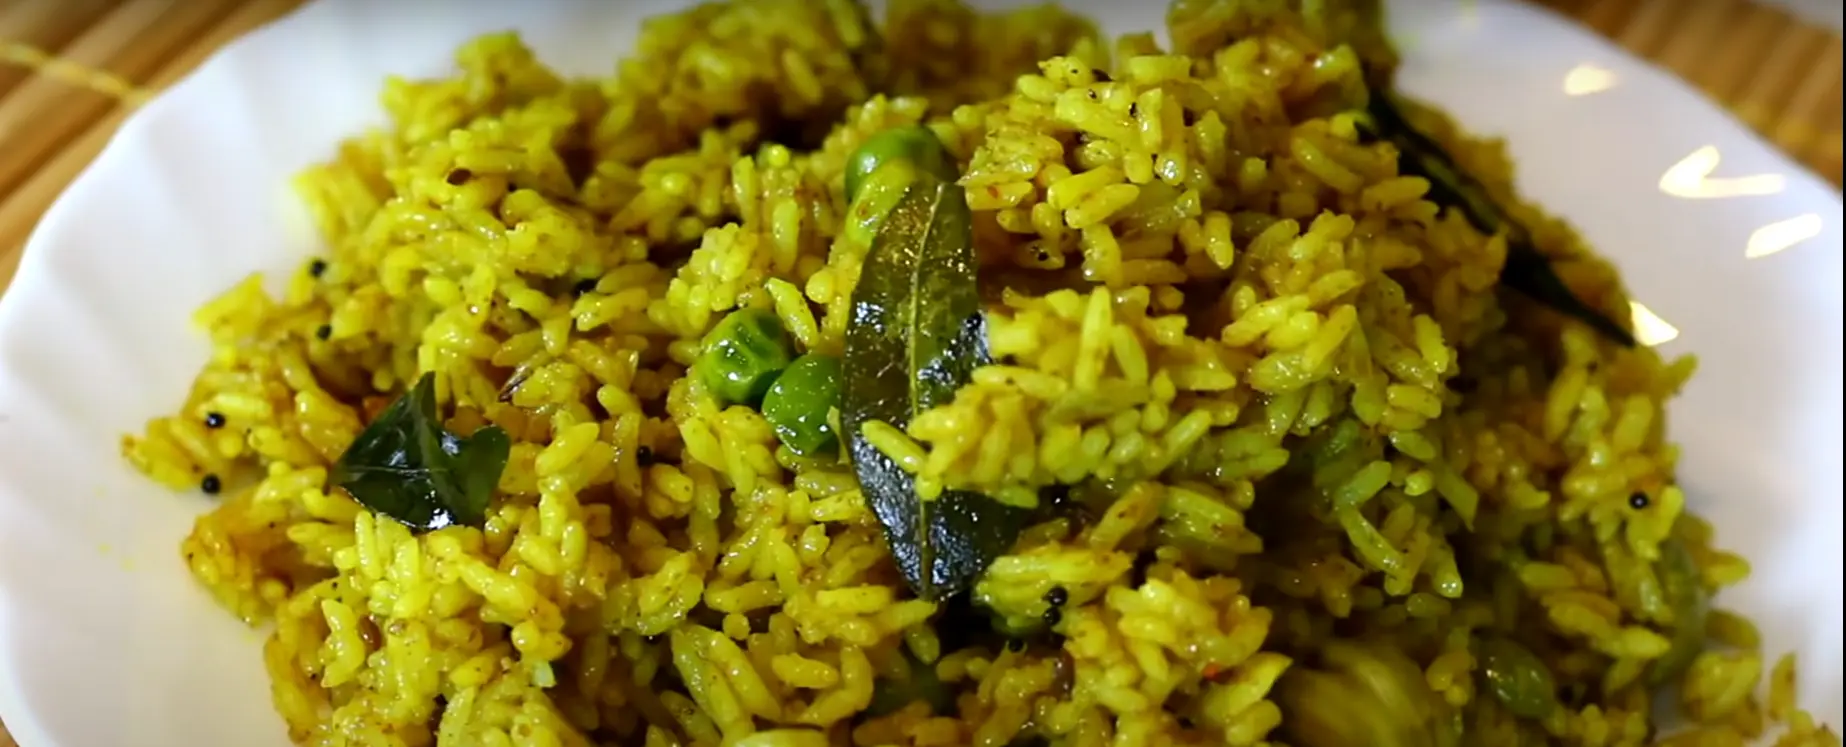 मसाले भात रेसिपी , masale bhat recipe in marathi